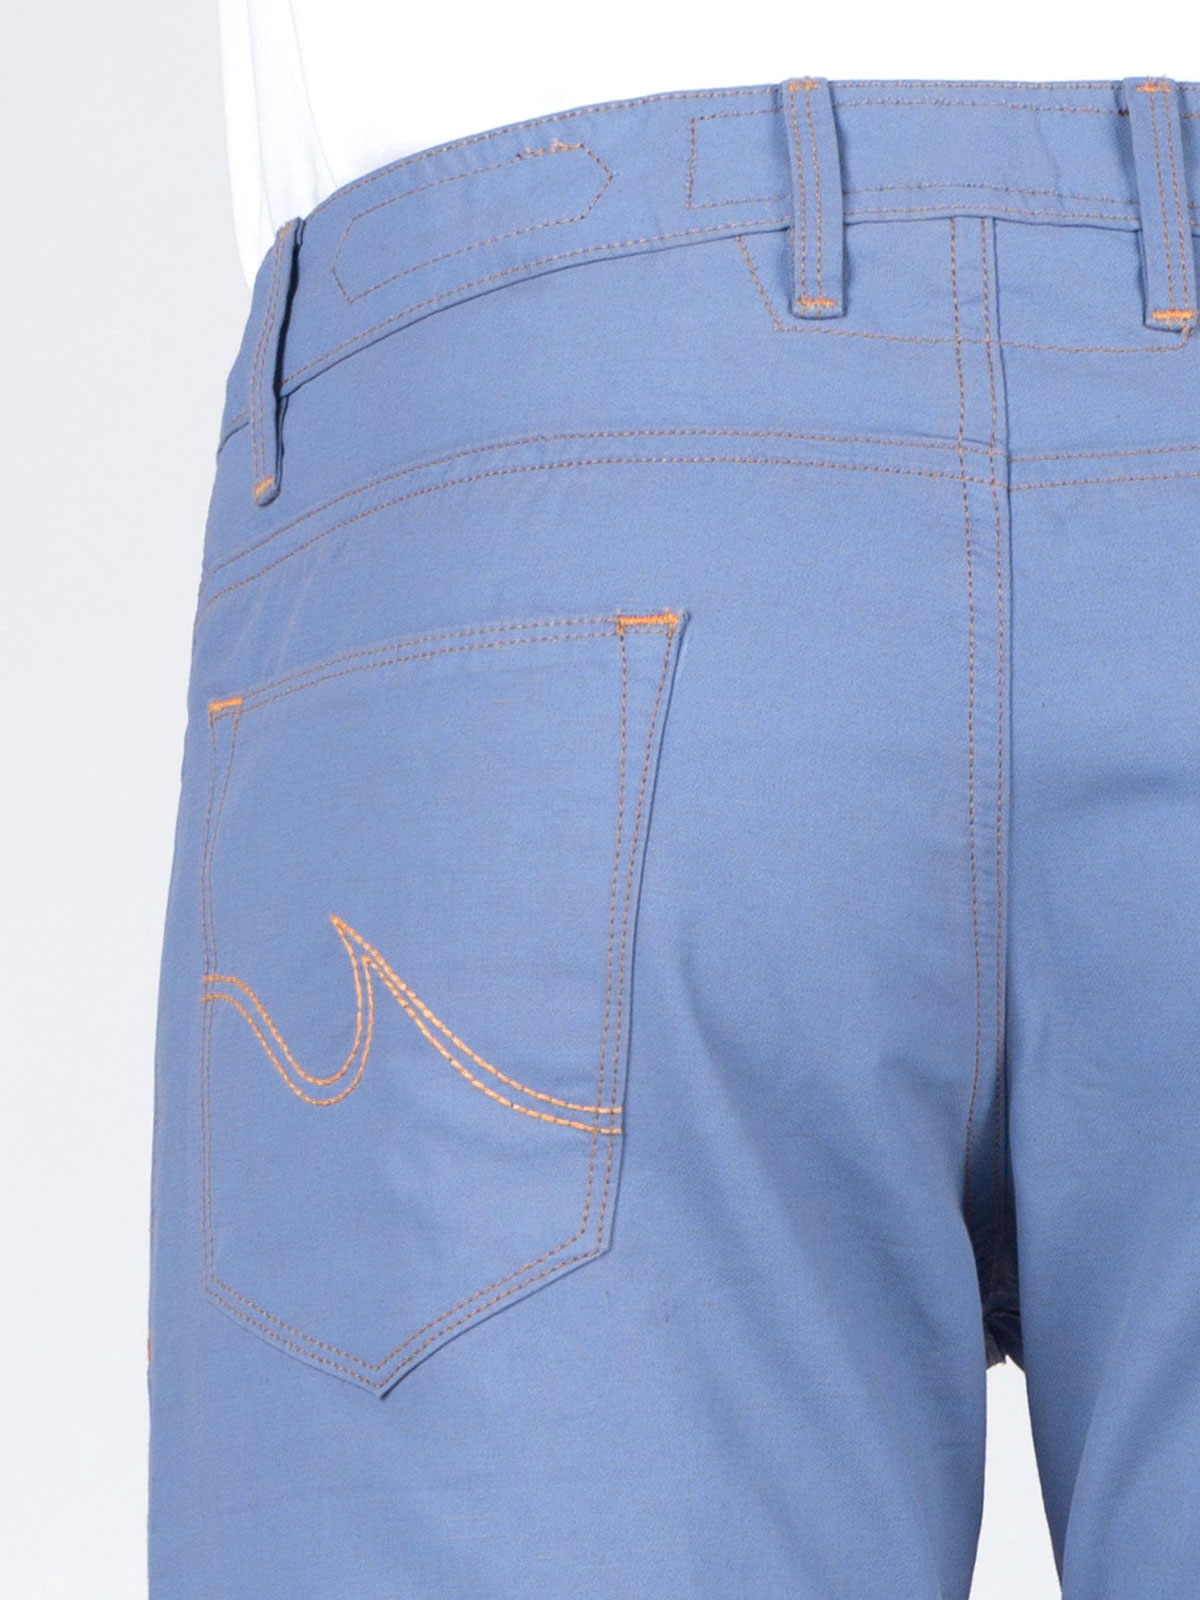 Κοντό παντελόνι σε γαλάζιο - 67003 € 11.25 img4